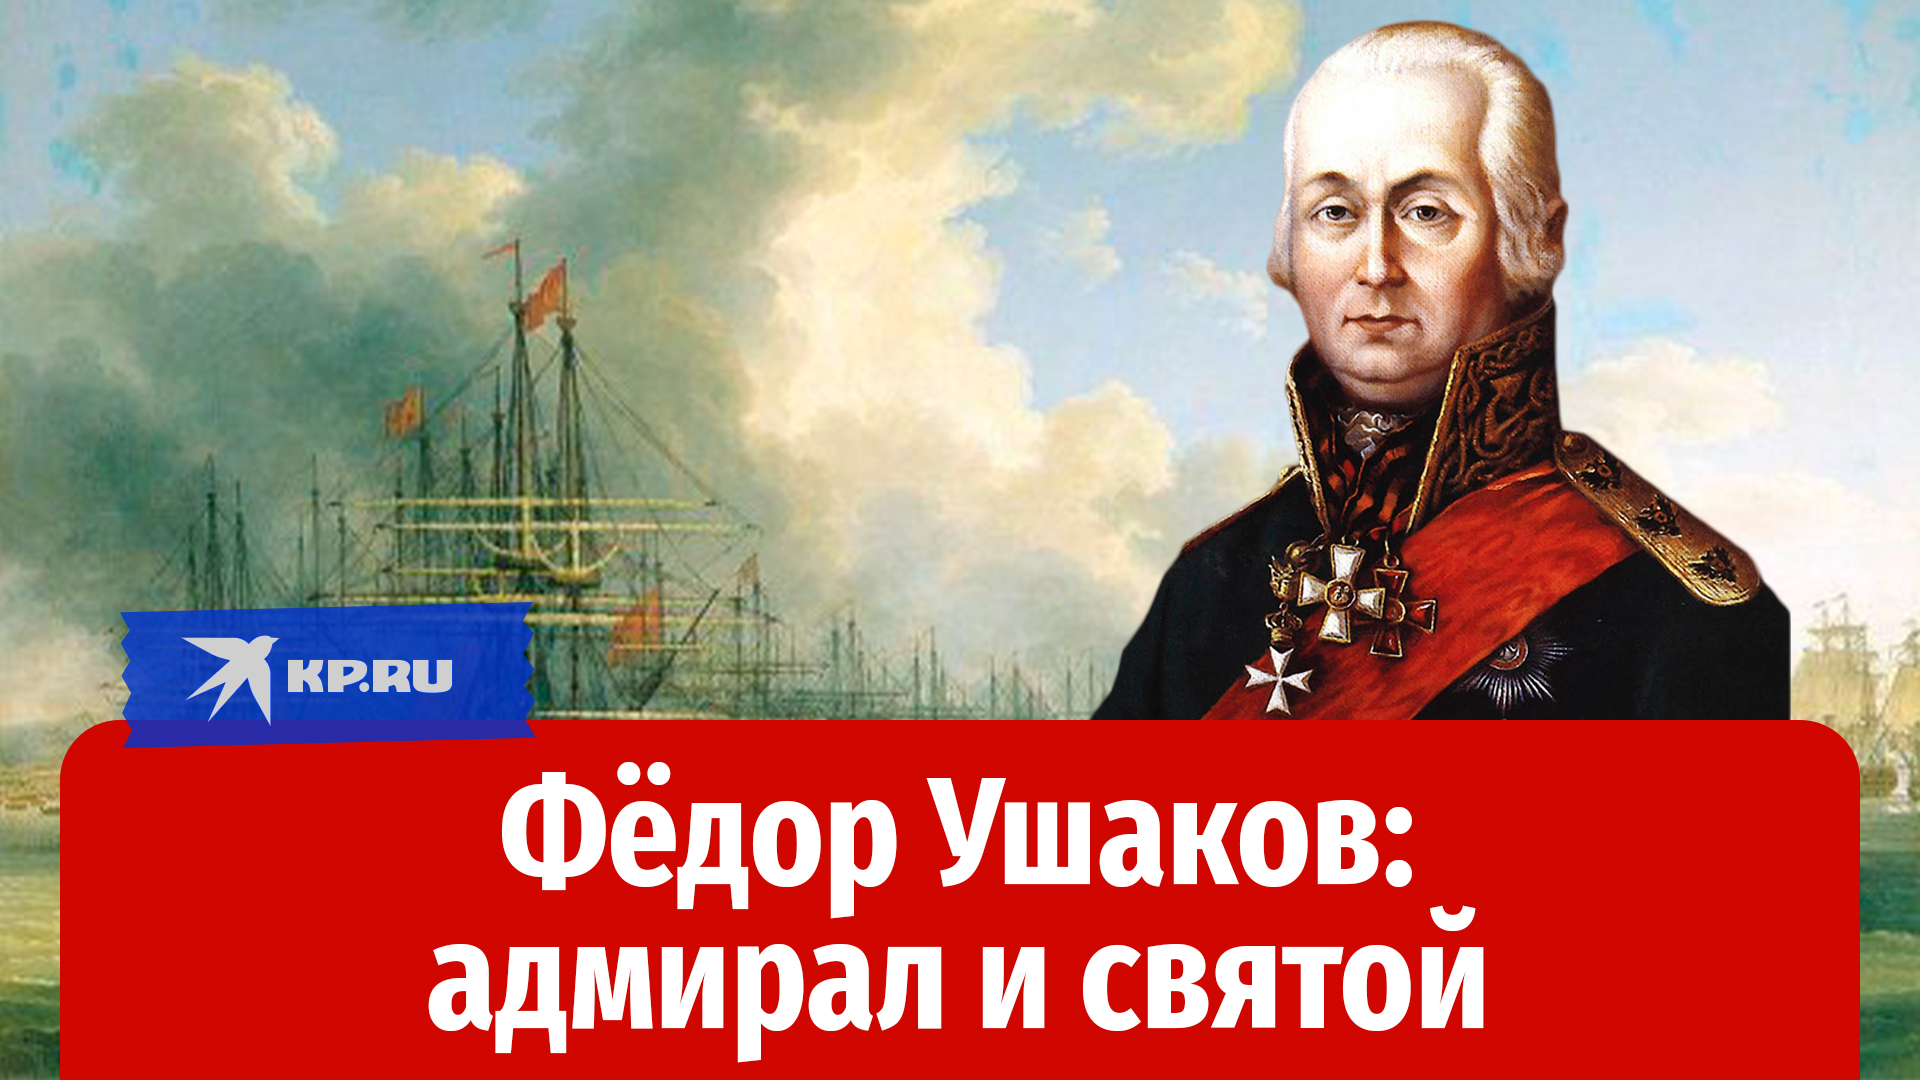 Как адмирал Фёдор Ушаков стал единственным в мире святым флотоводцем